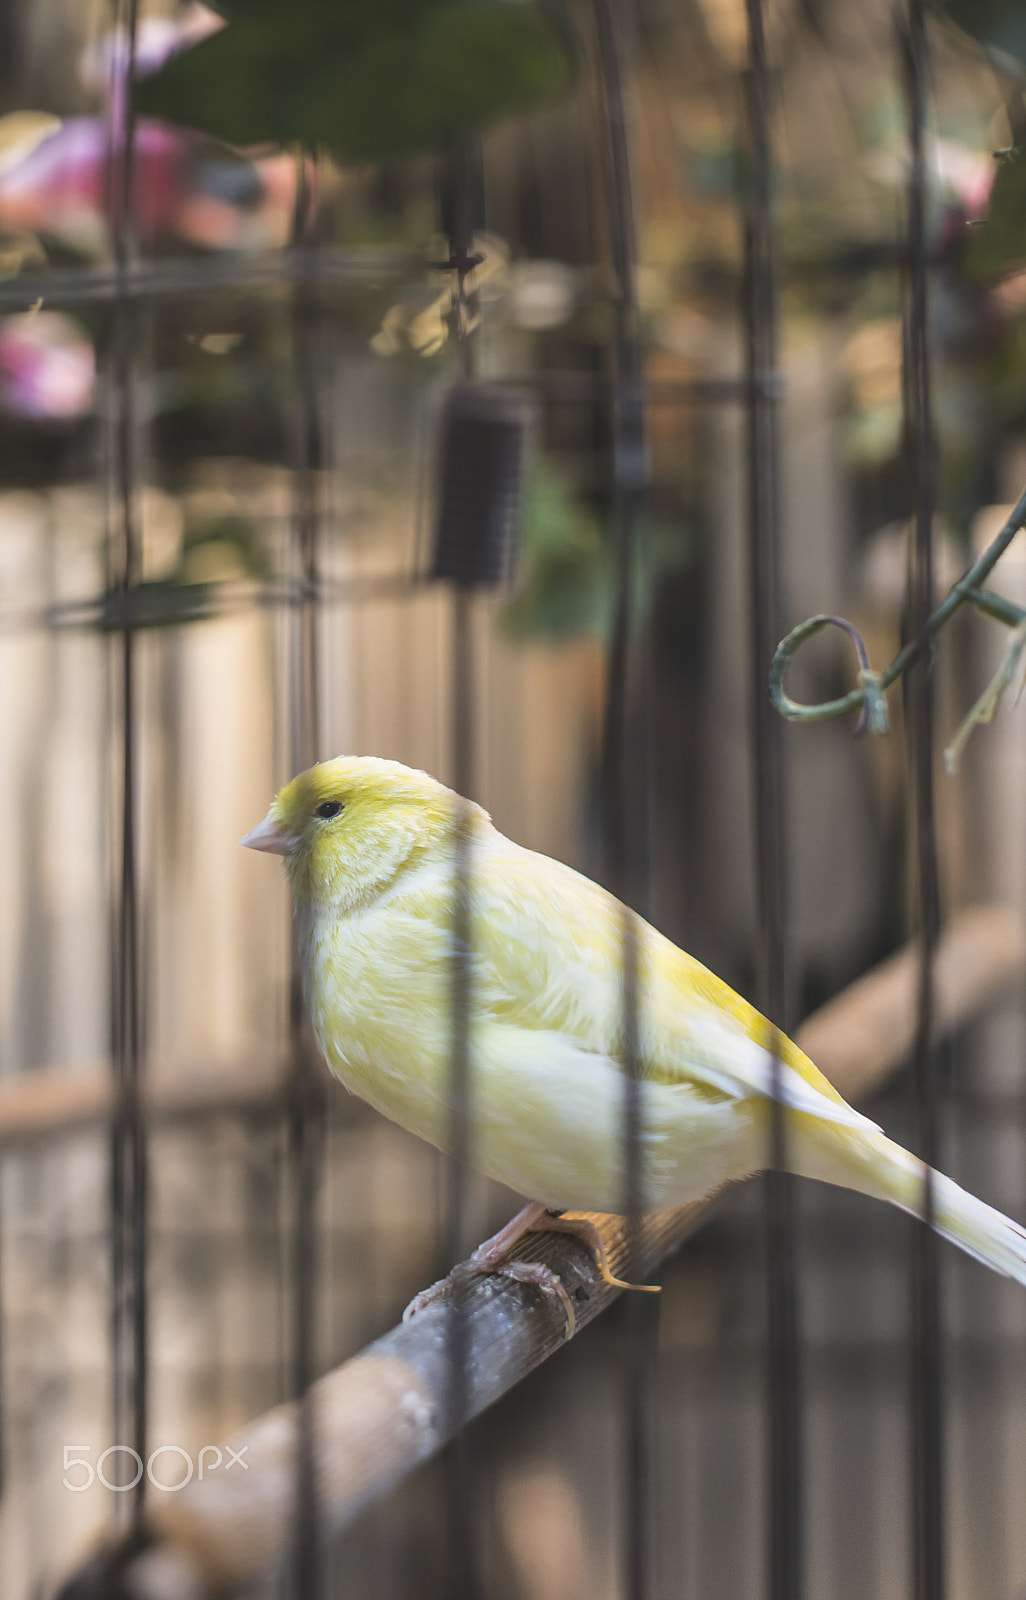 Nikon D800E sample photo. Bird in a cage photography